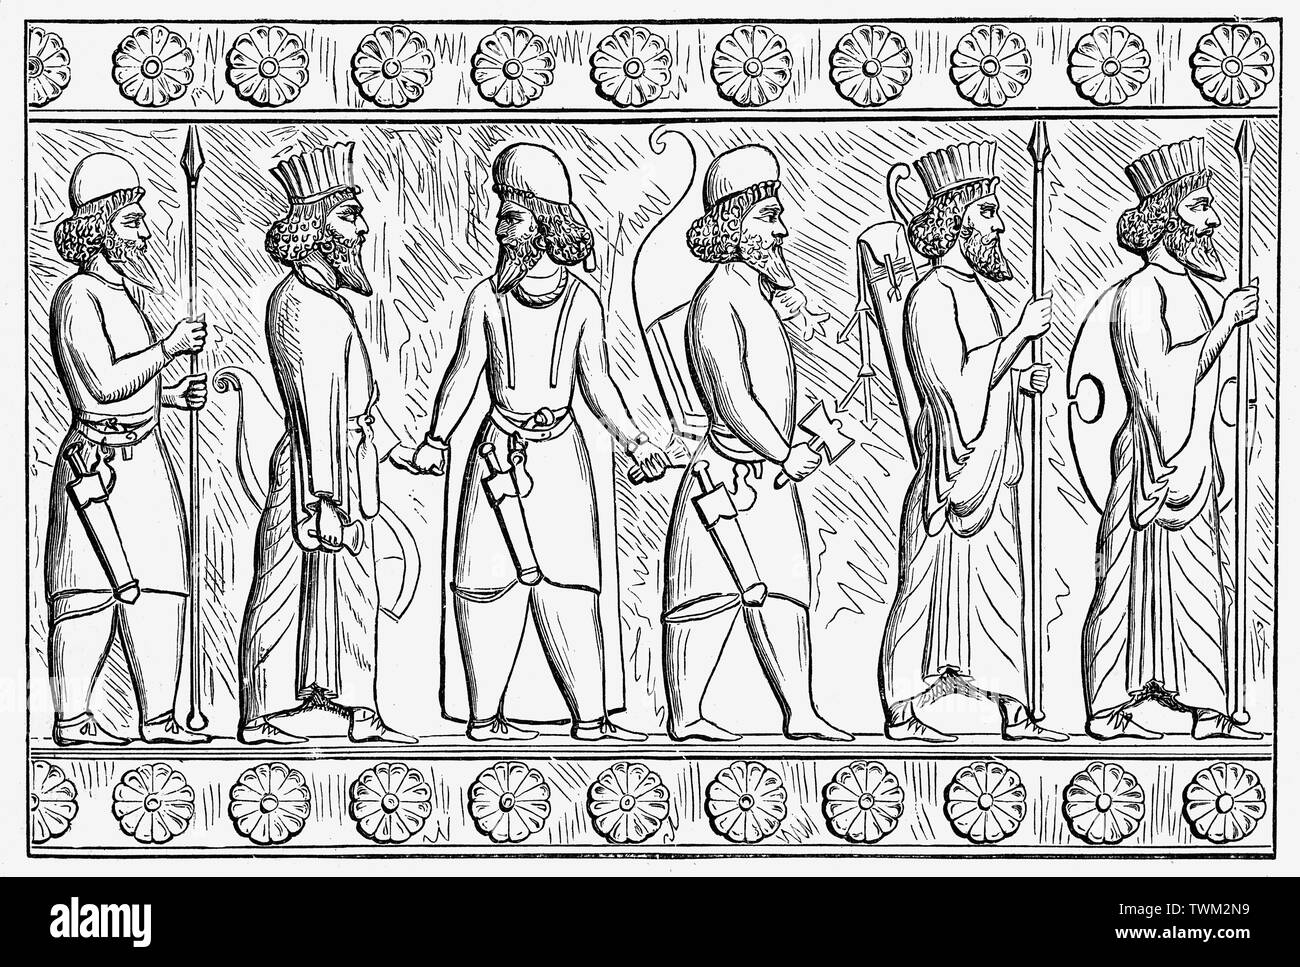 Geschnitzte Relief der Soldaten von Persepolis, der zeremoniellen Hauptstadt des achämenidischen - oder Erste Persische-Empire (Ca. 550 - 330 v. Chr.). Es ist 60 km nordöstlich der Stadt Shiraz in der Provinz Fars, Iran. Stockfoto